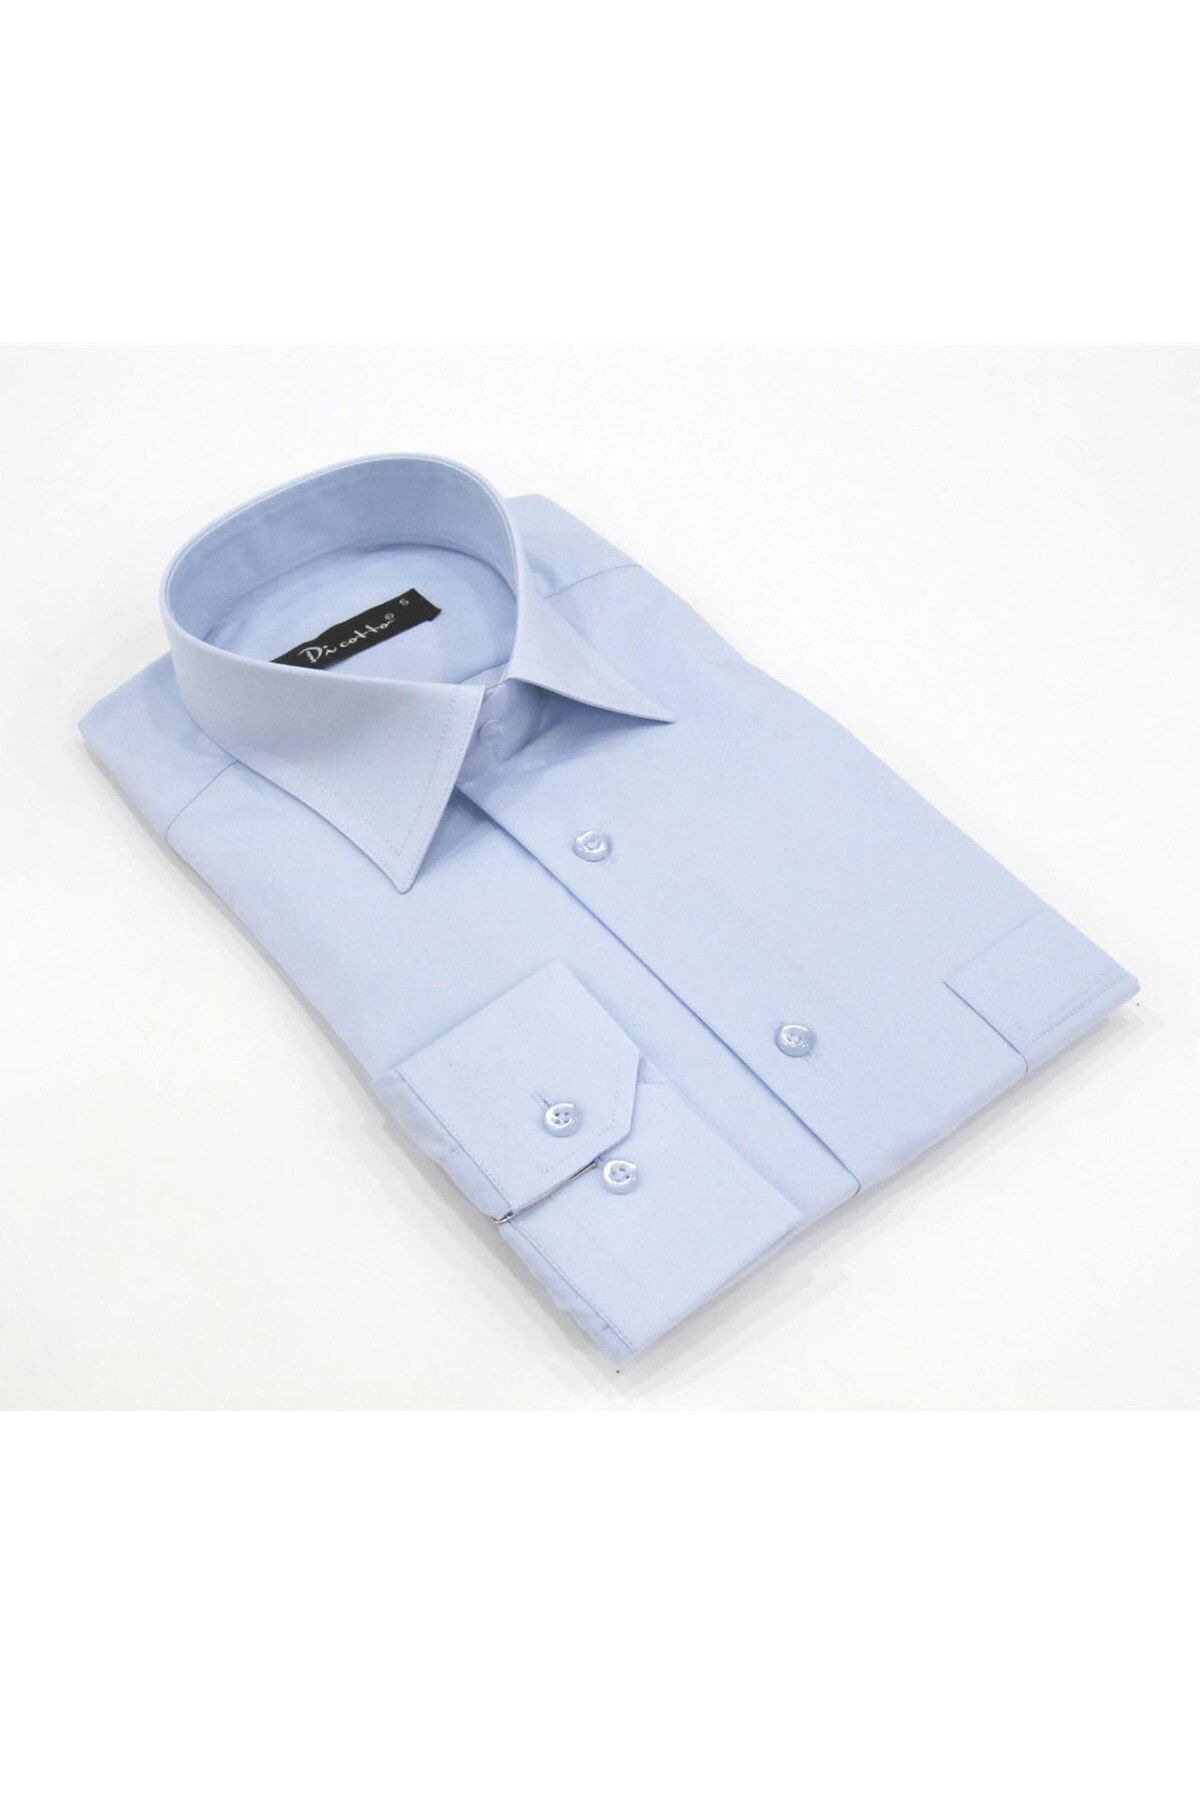 Dicotto Açık Mavi Büyük Beden Düz Renk Uzun Kol Klasik Erkek Gömlek - 150-3